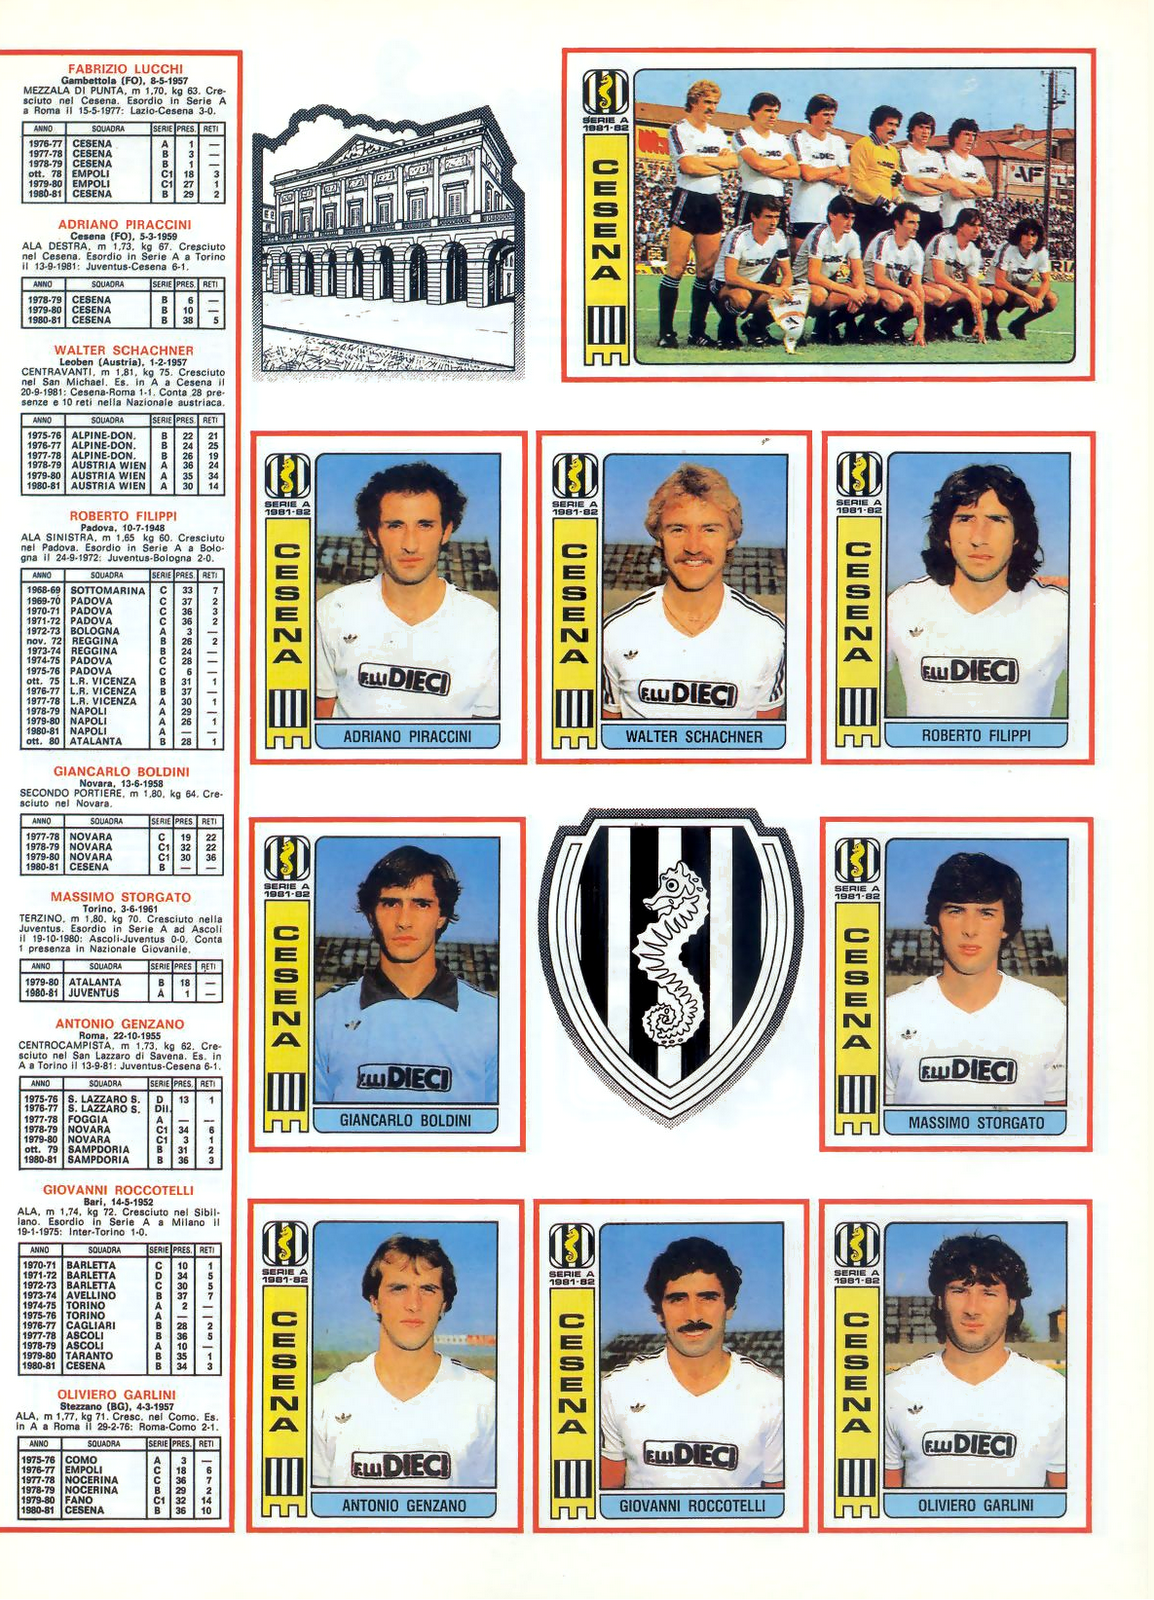 Camisa retrô Palermo 1980- ITA